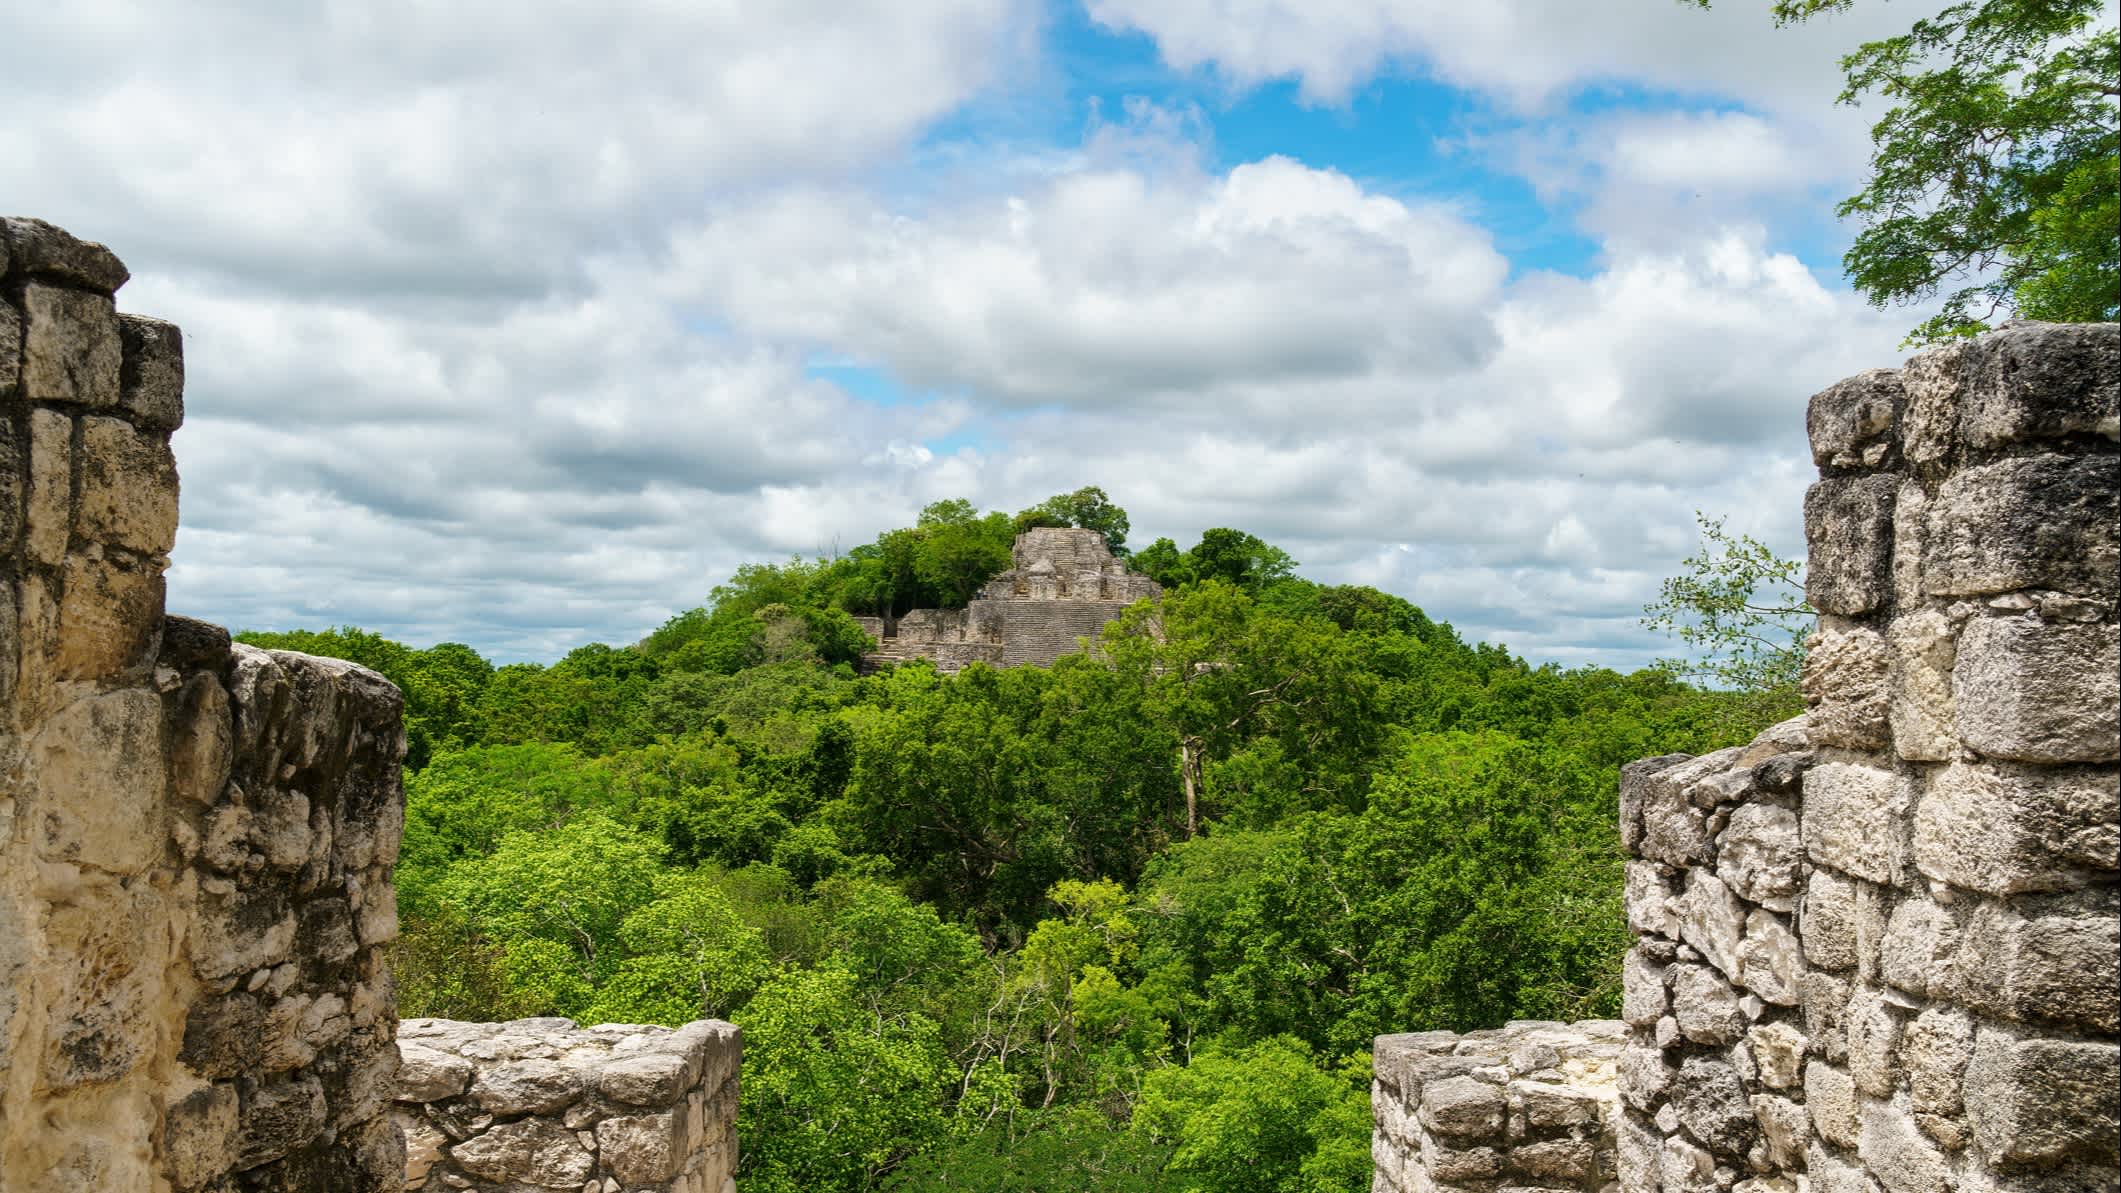 Ruines de Calakmul entourés d'arbres, au Yucatán, au Mexique.

